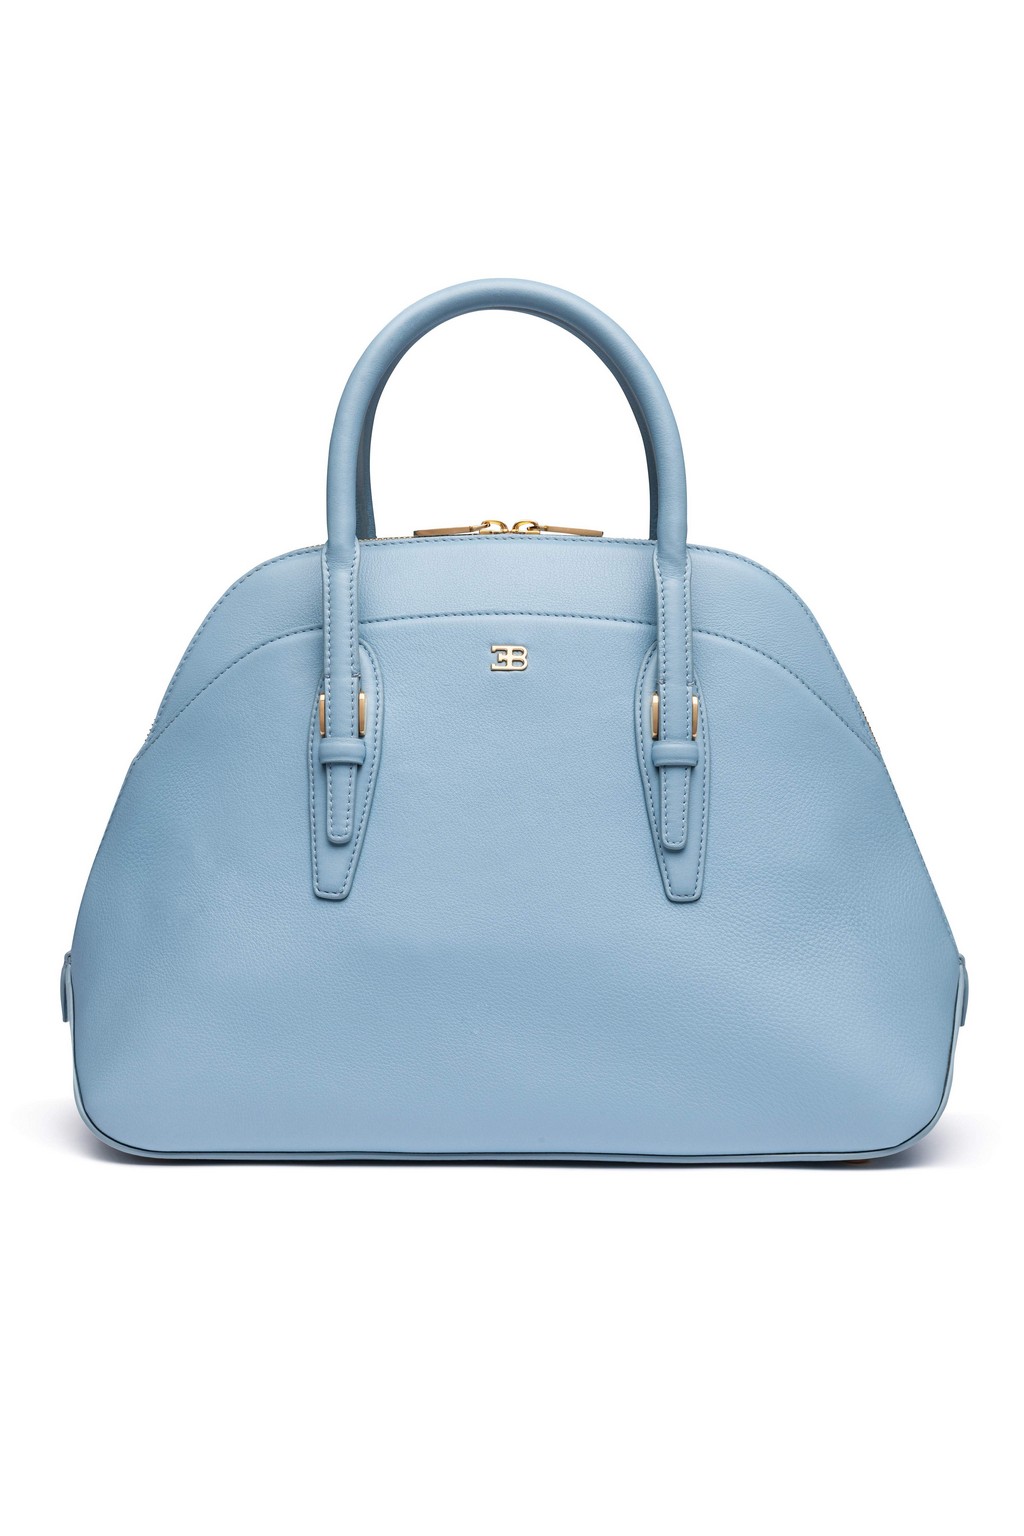 Ettore Bugatti borse: la nuova Small Lady Bag per la primavera estate 2016